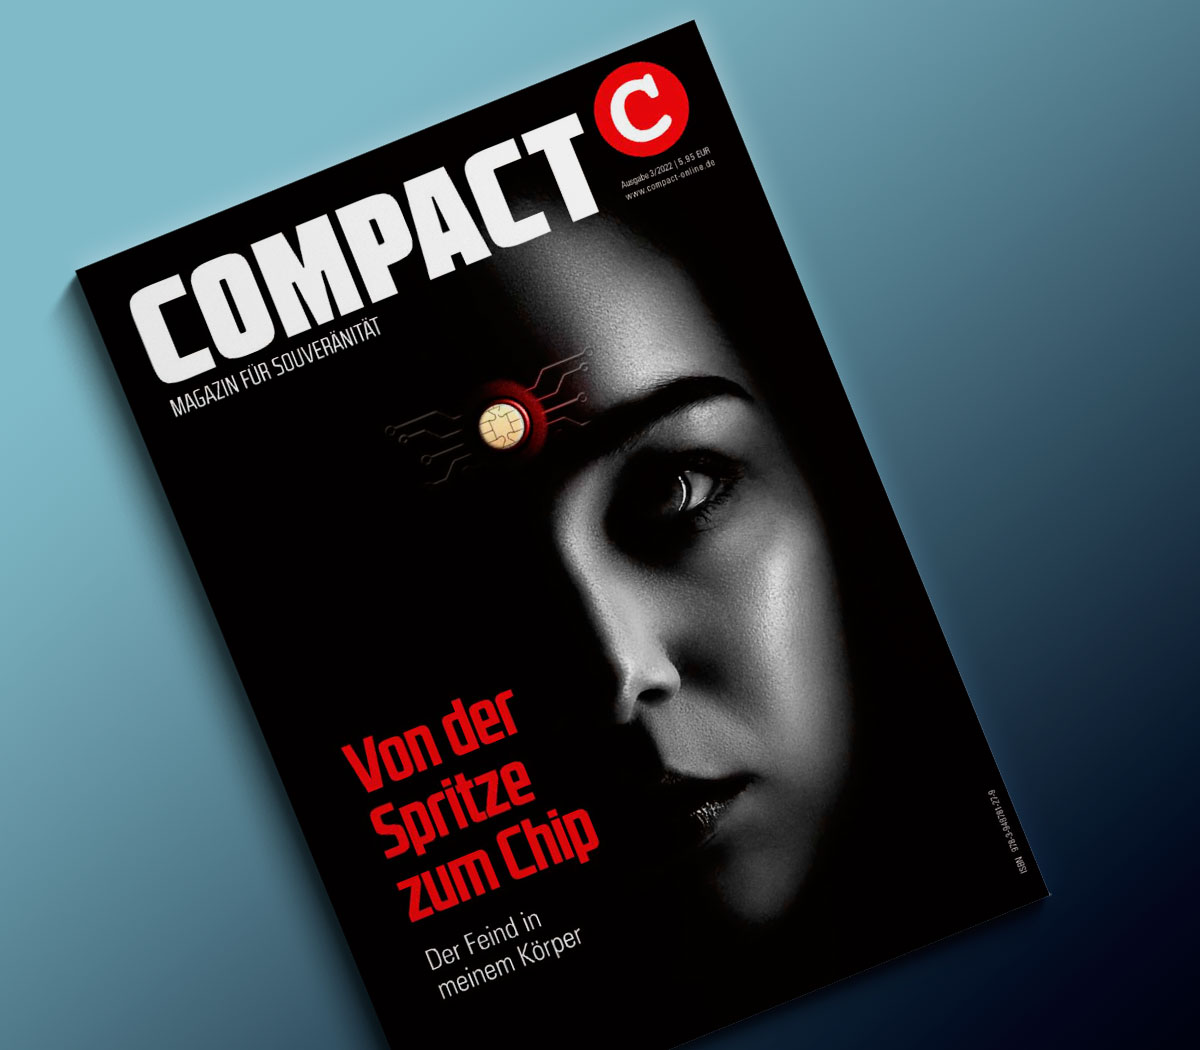 COMPACT Magazin - Abonnieren Sie jetzt das Flaggschiff der alternativen Medien